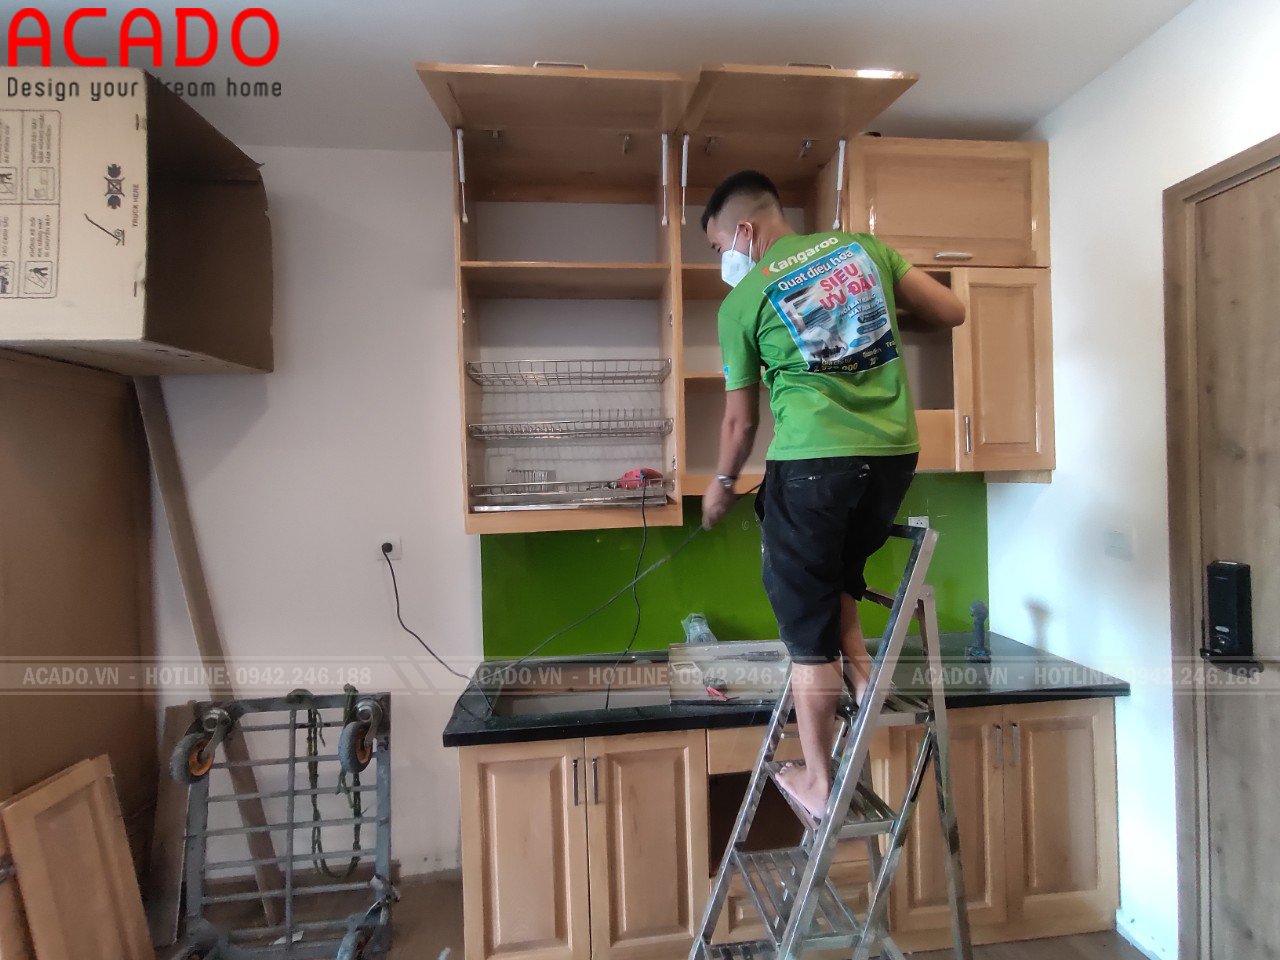 Hình ảnh thợ thi nội thất ACADO đang miệt mài lắp đặt tủ bếp